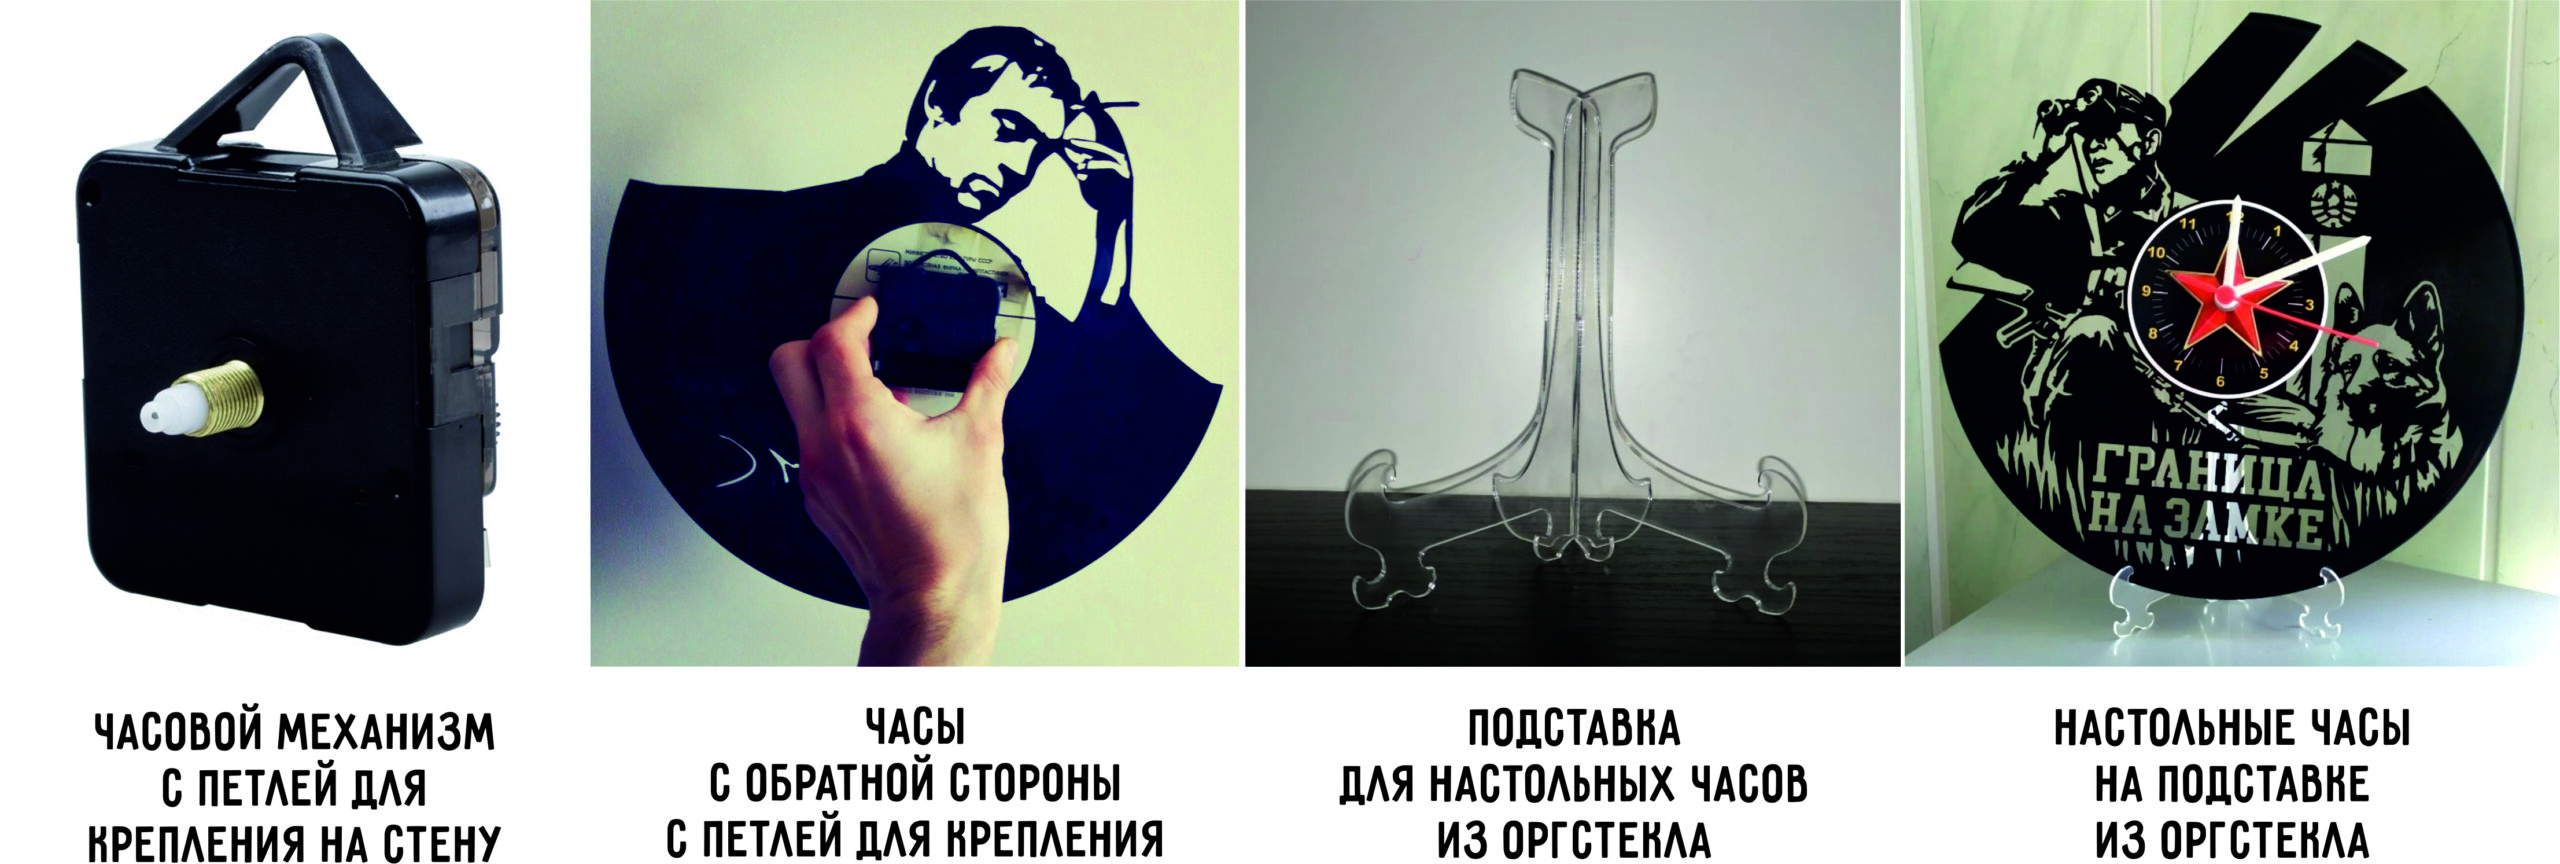 Никколо Паганини [Версия 1]. Дизайнерские часы из настоящей виниловой пластинки